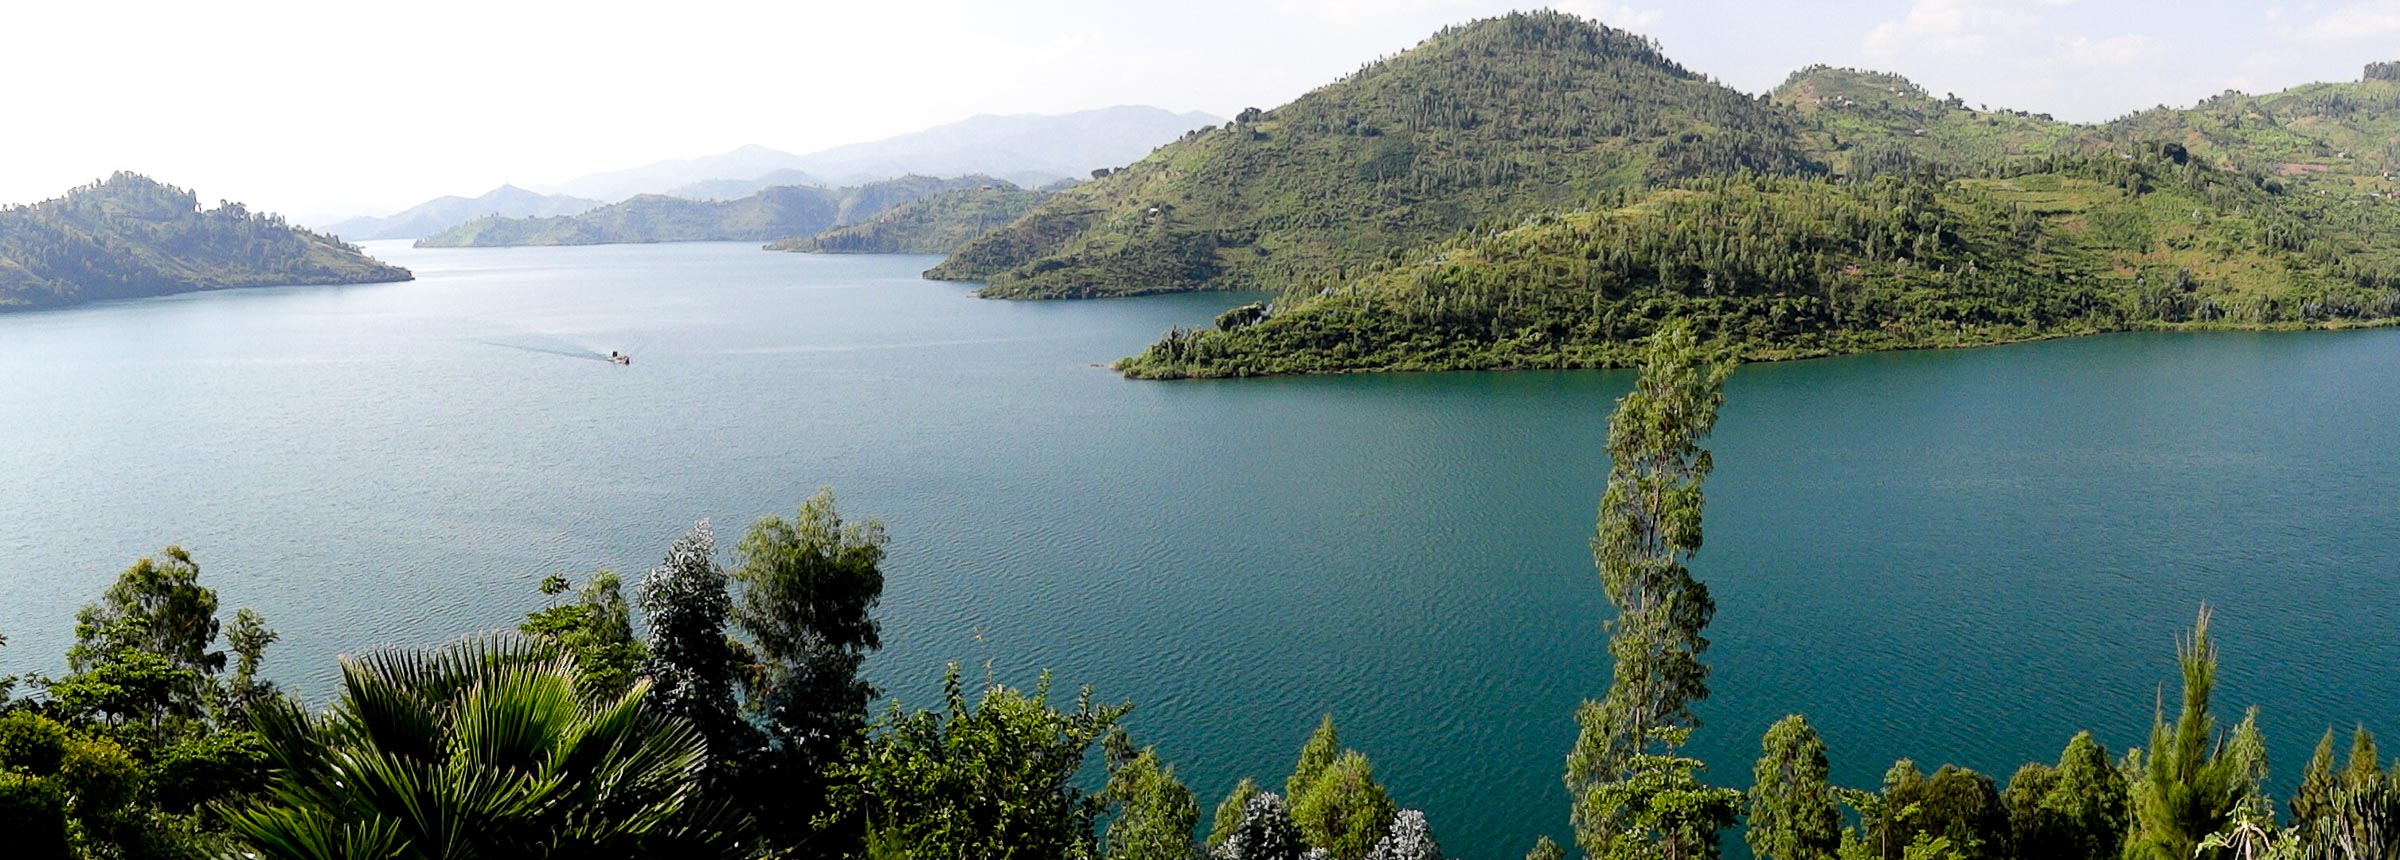 Озеро Киву, Руанда, др Конго